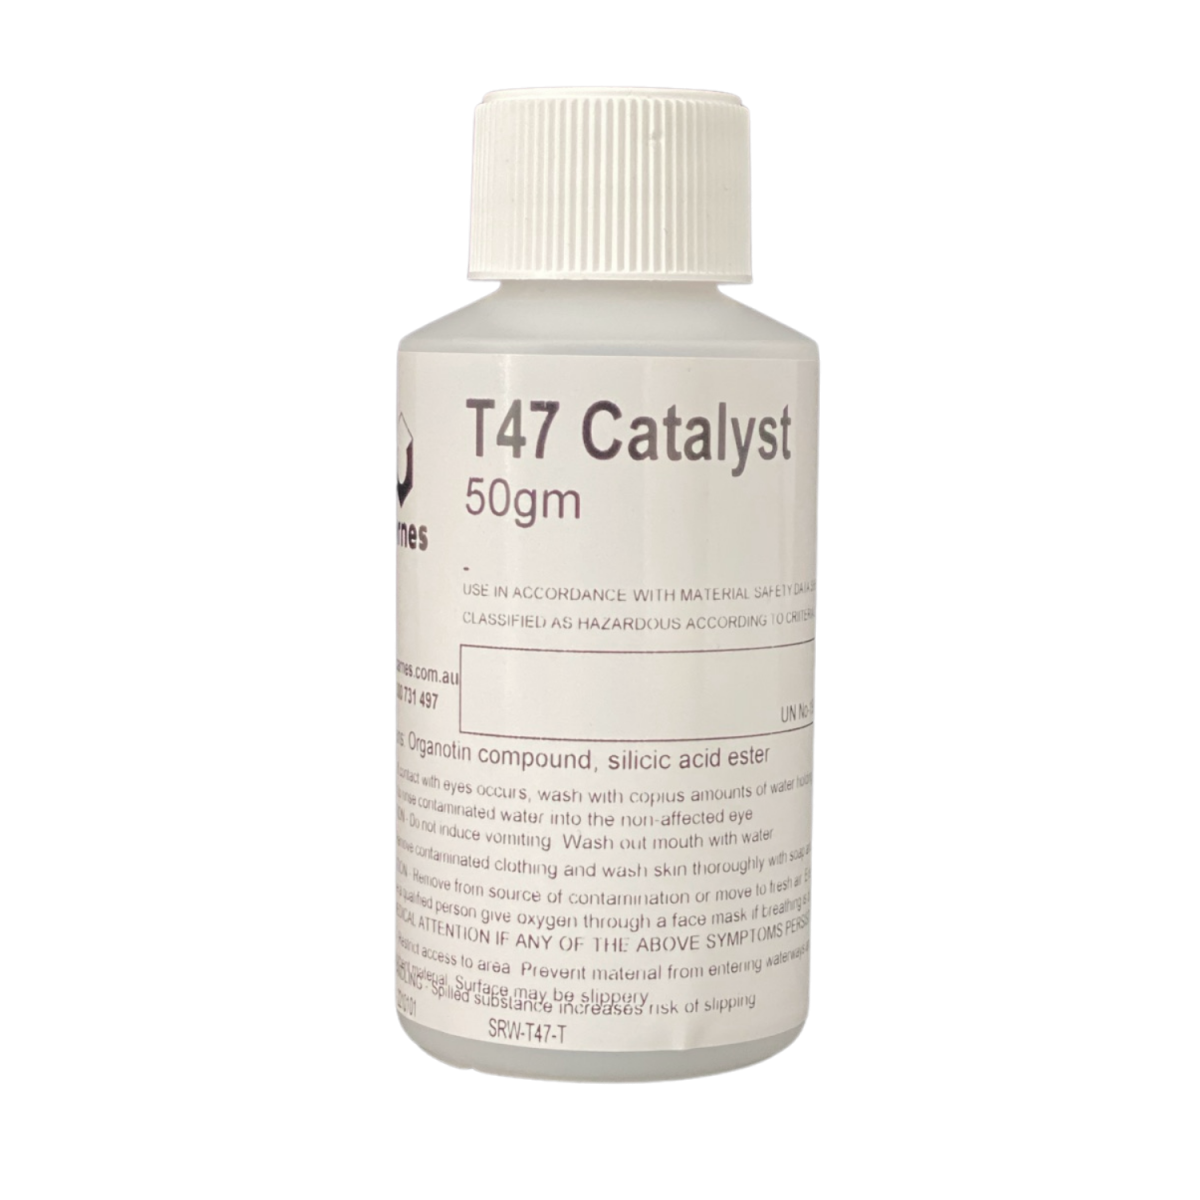 T47 Catalyst